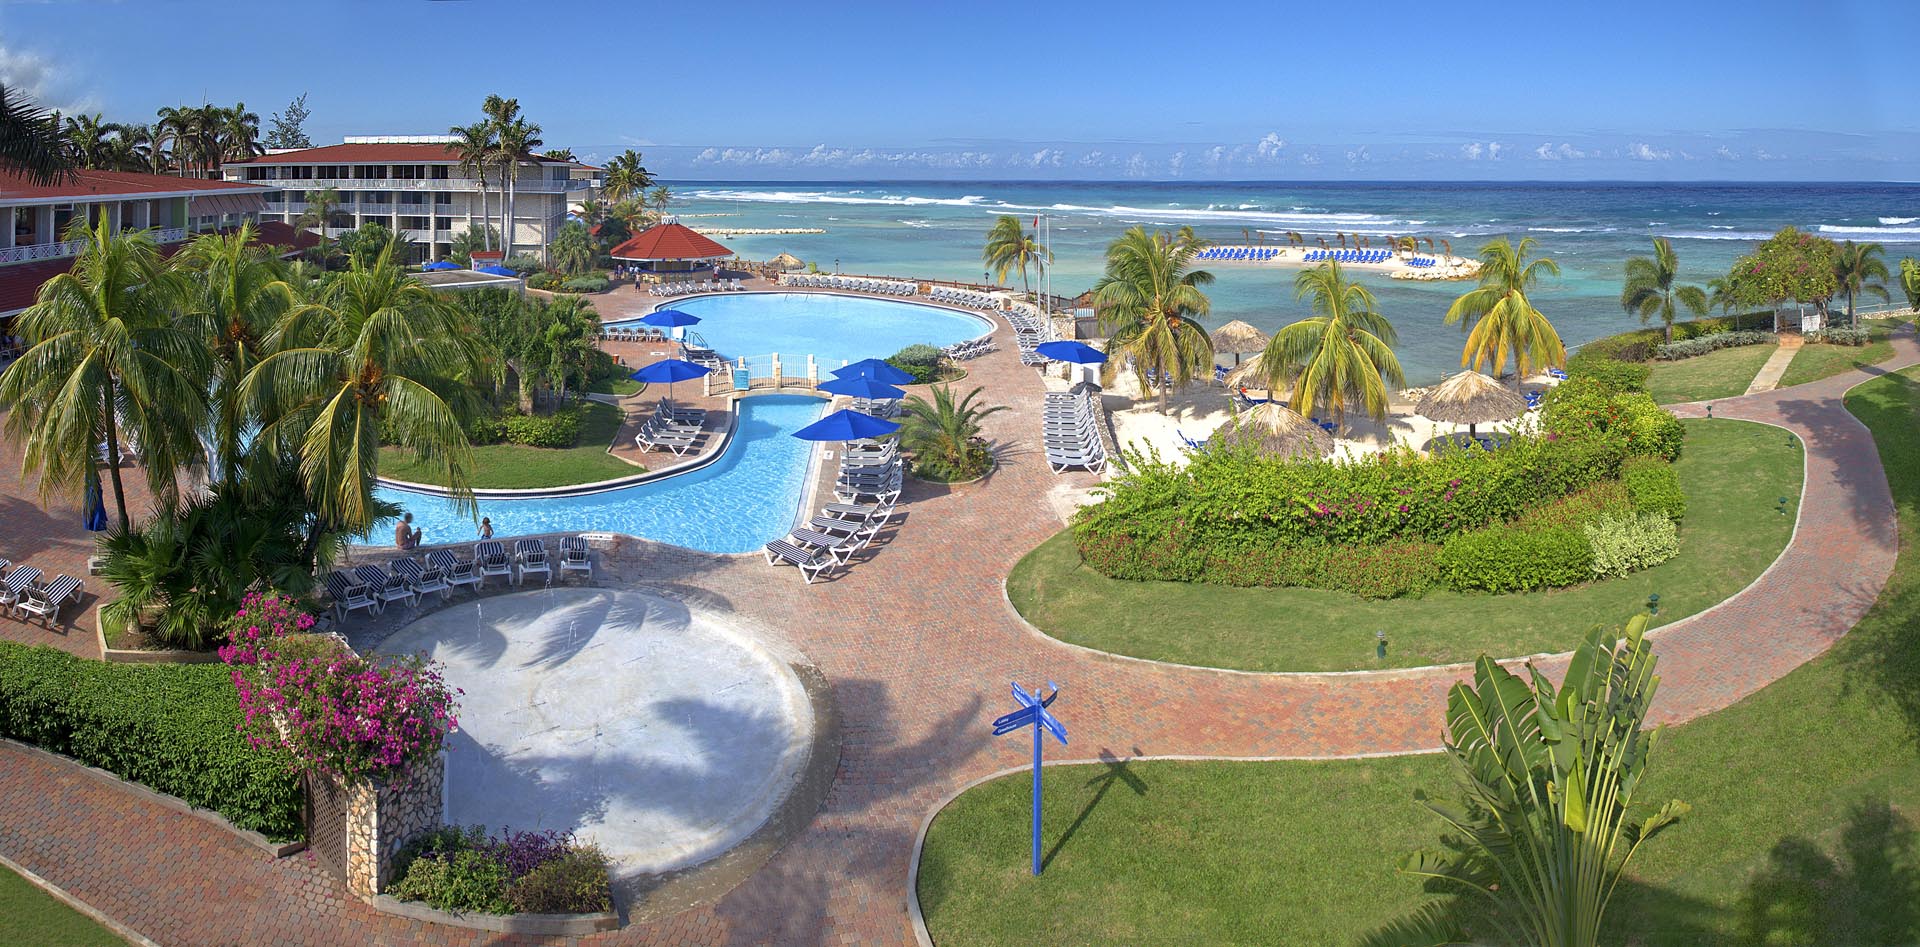 Holiday Inn Jamaica